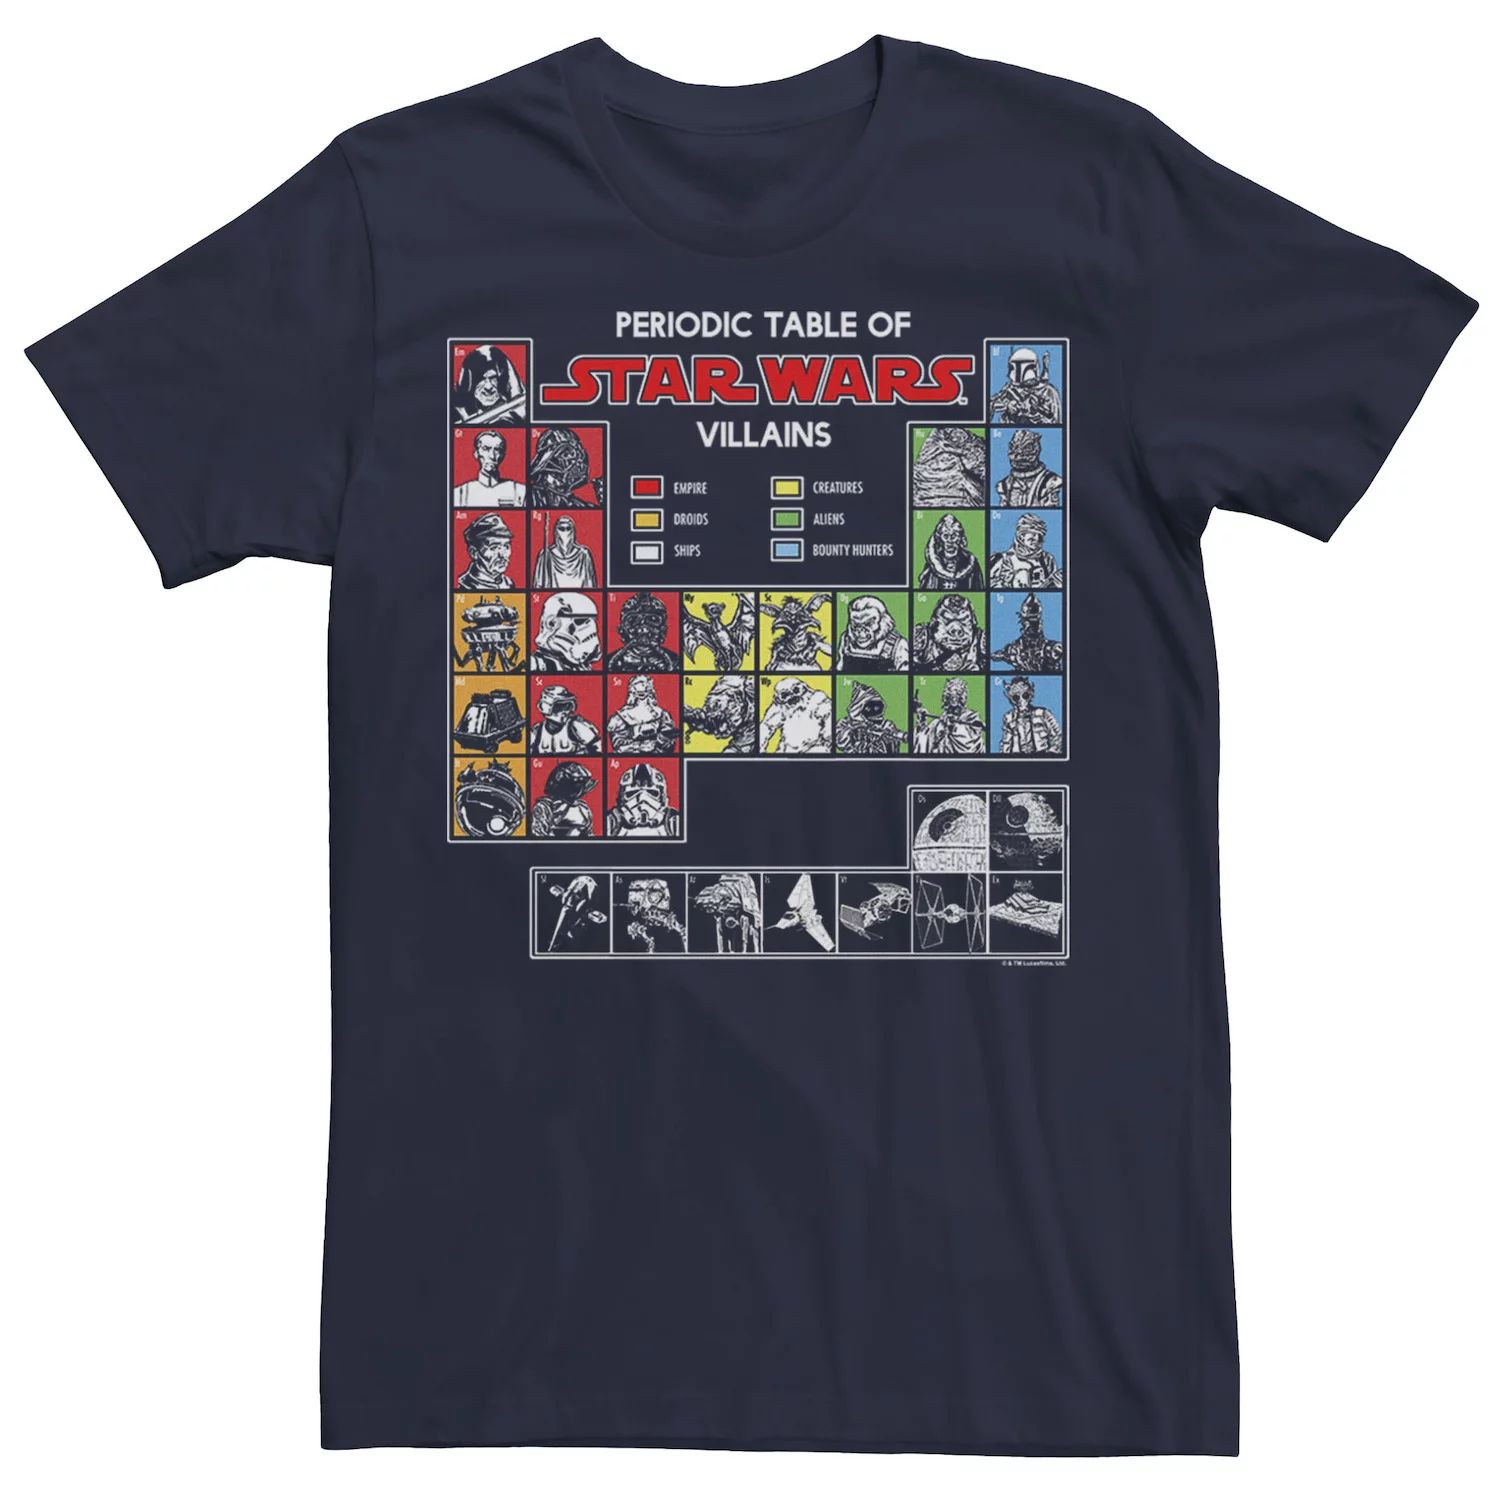 тетрадь rex a5 с периодической таблицей Мужская футболка с периодической таблицей злодеев Star Wars